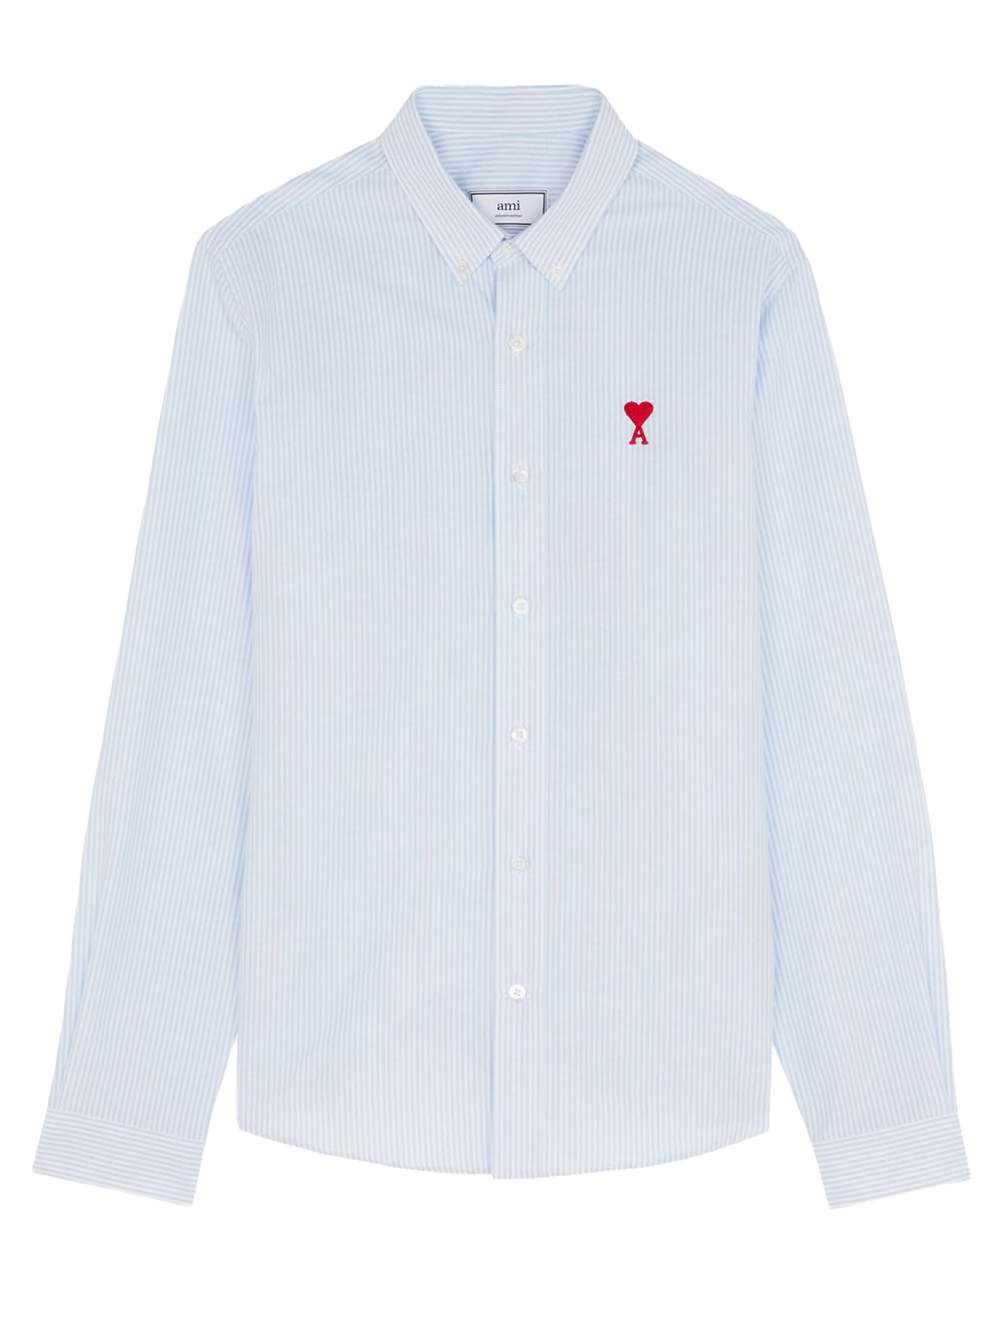 Ami Paris Button Down Ami De Coeur Collar Shirt White/Blue/Red